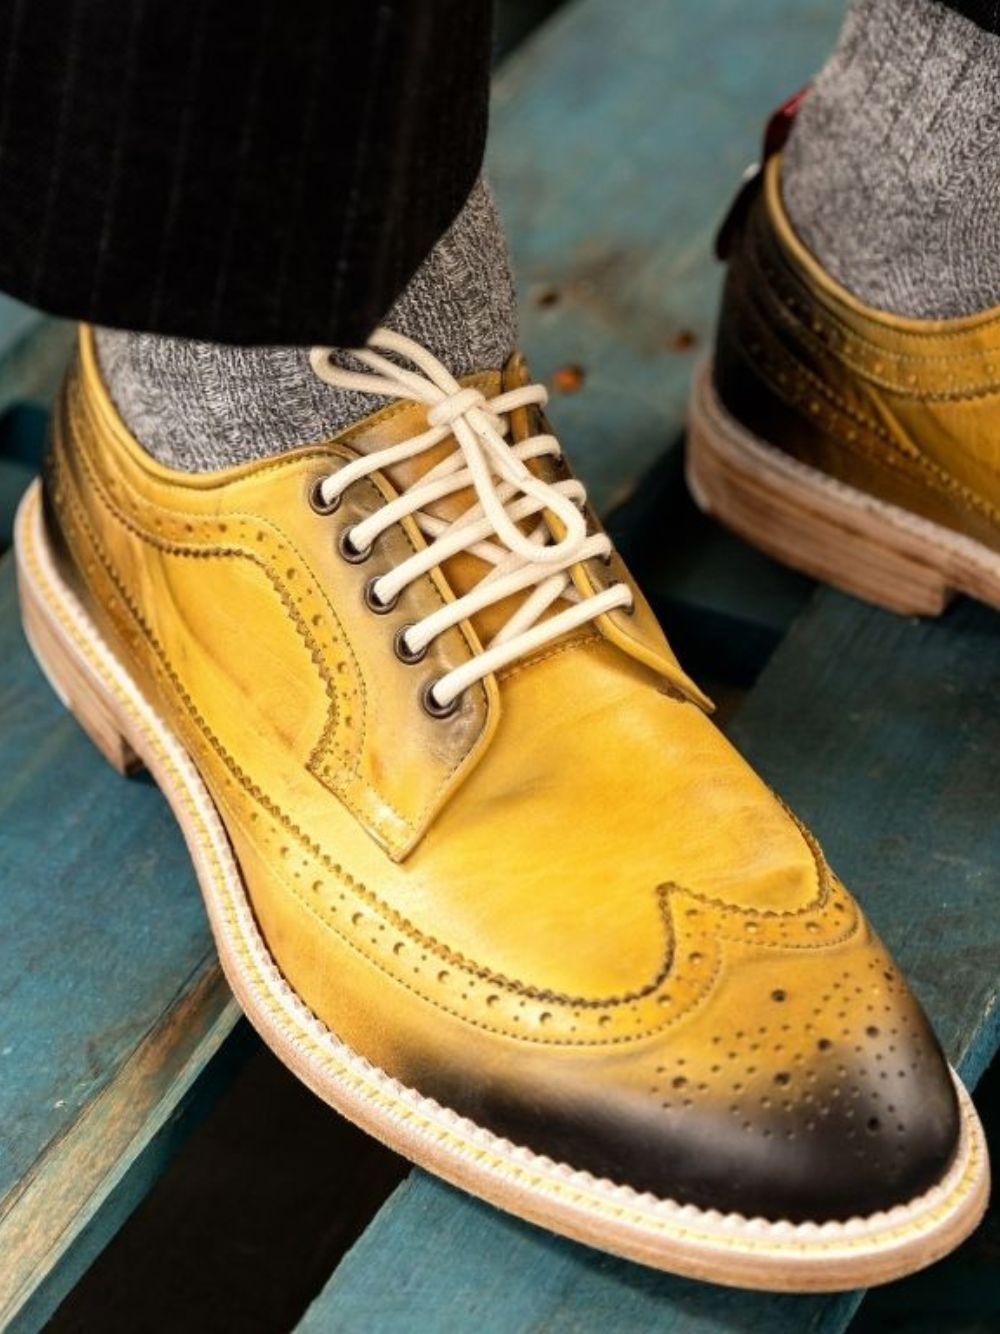 Dublin Yellow Shoes